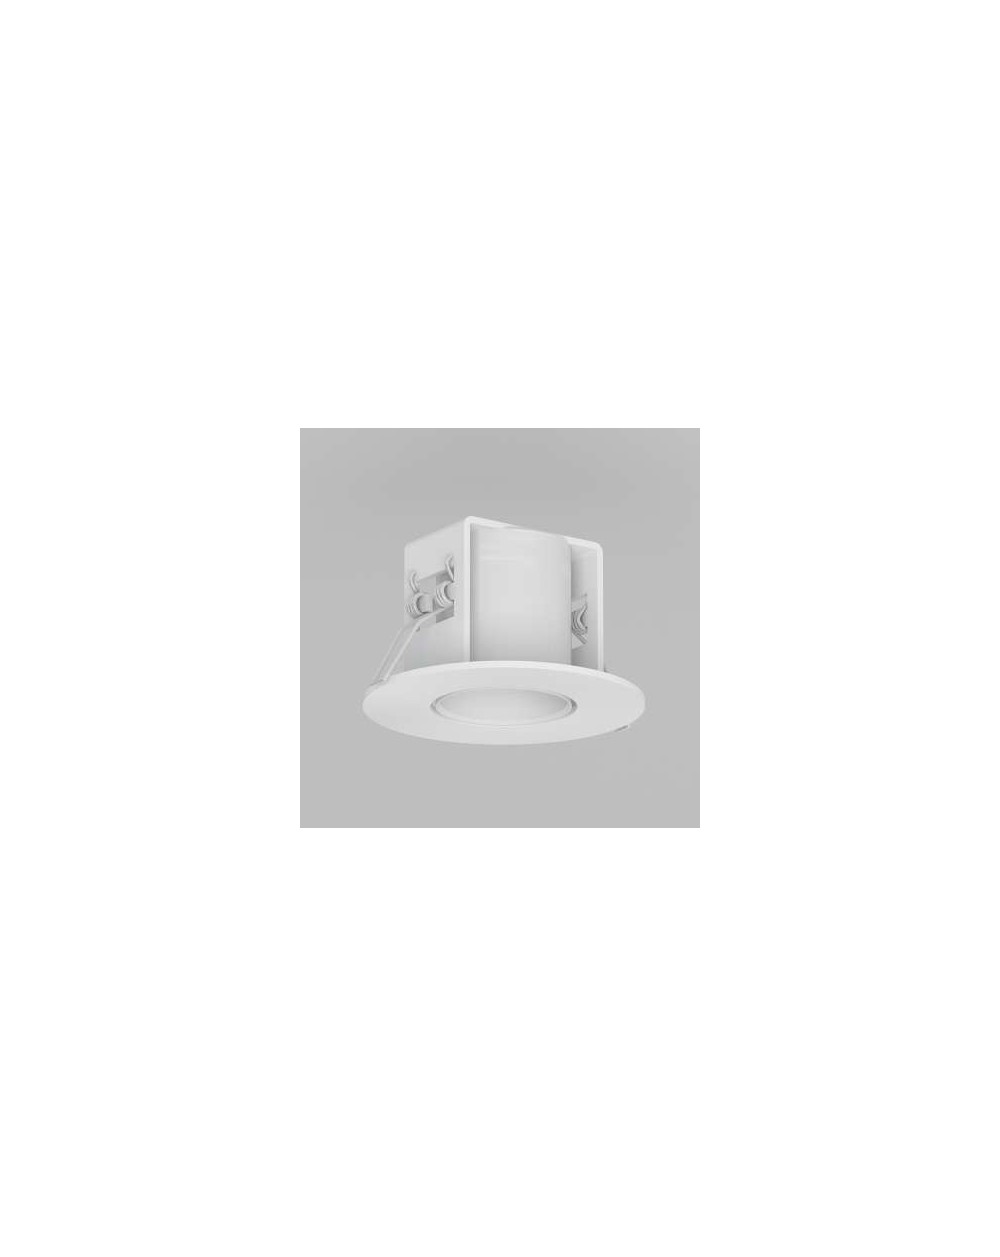 Natynkowa / lampa sufitowa Minimal Stropowy - wersja A1 NT 1 x 60W - Cleoni kolor biały czarny aluminium